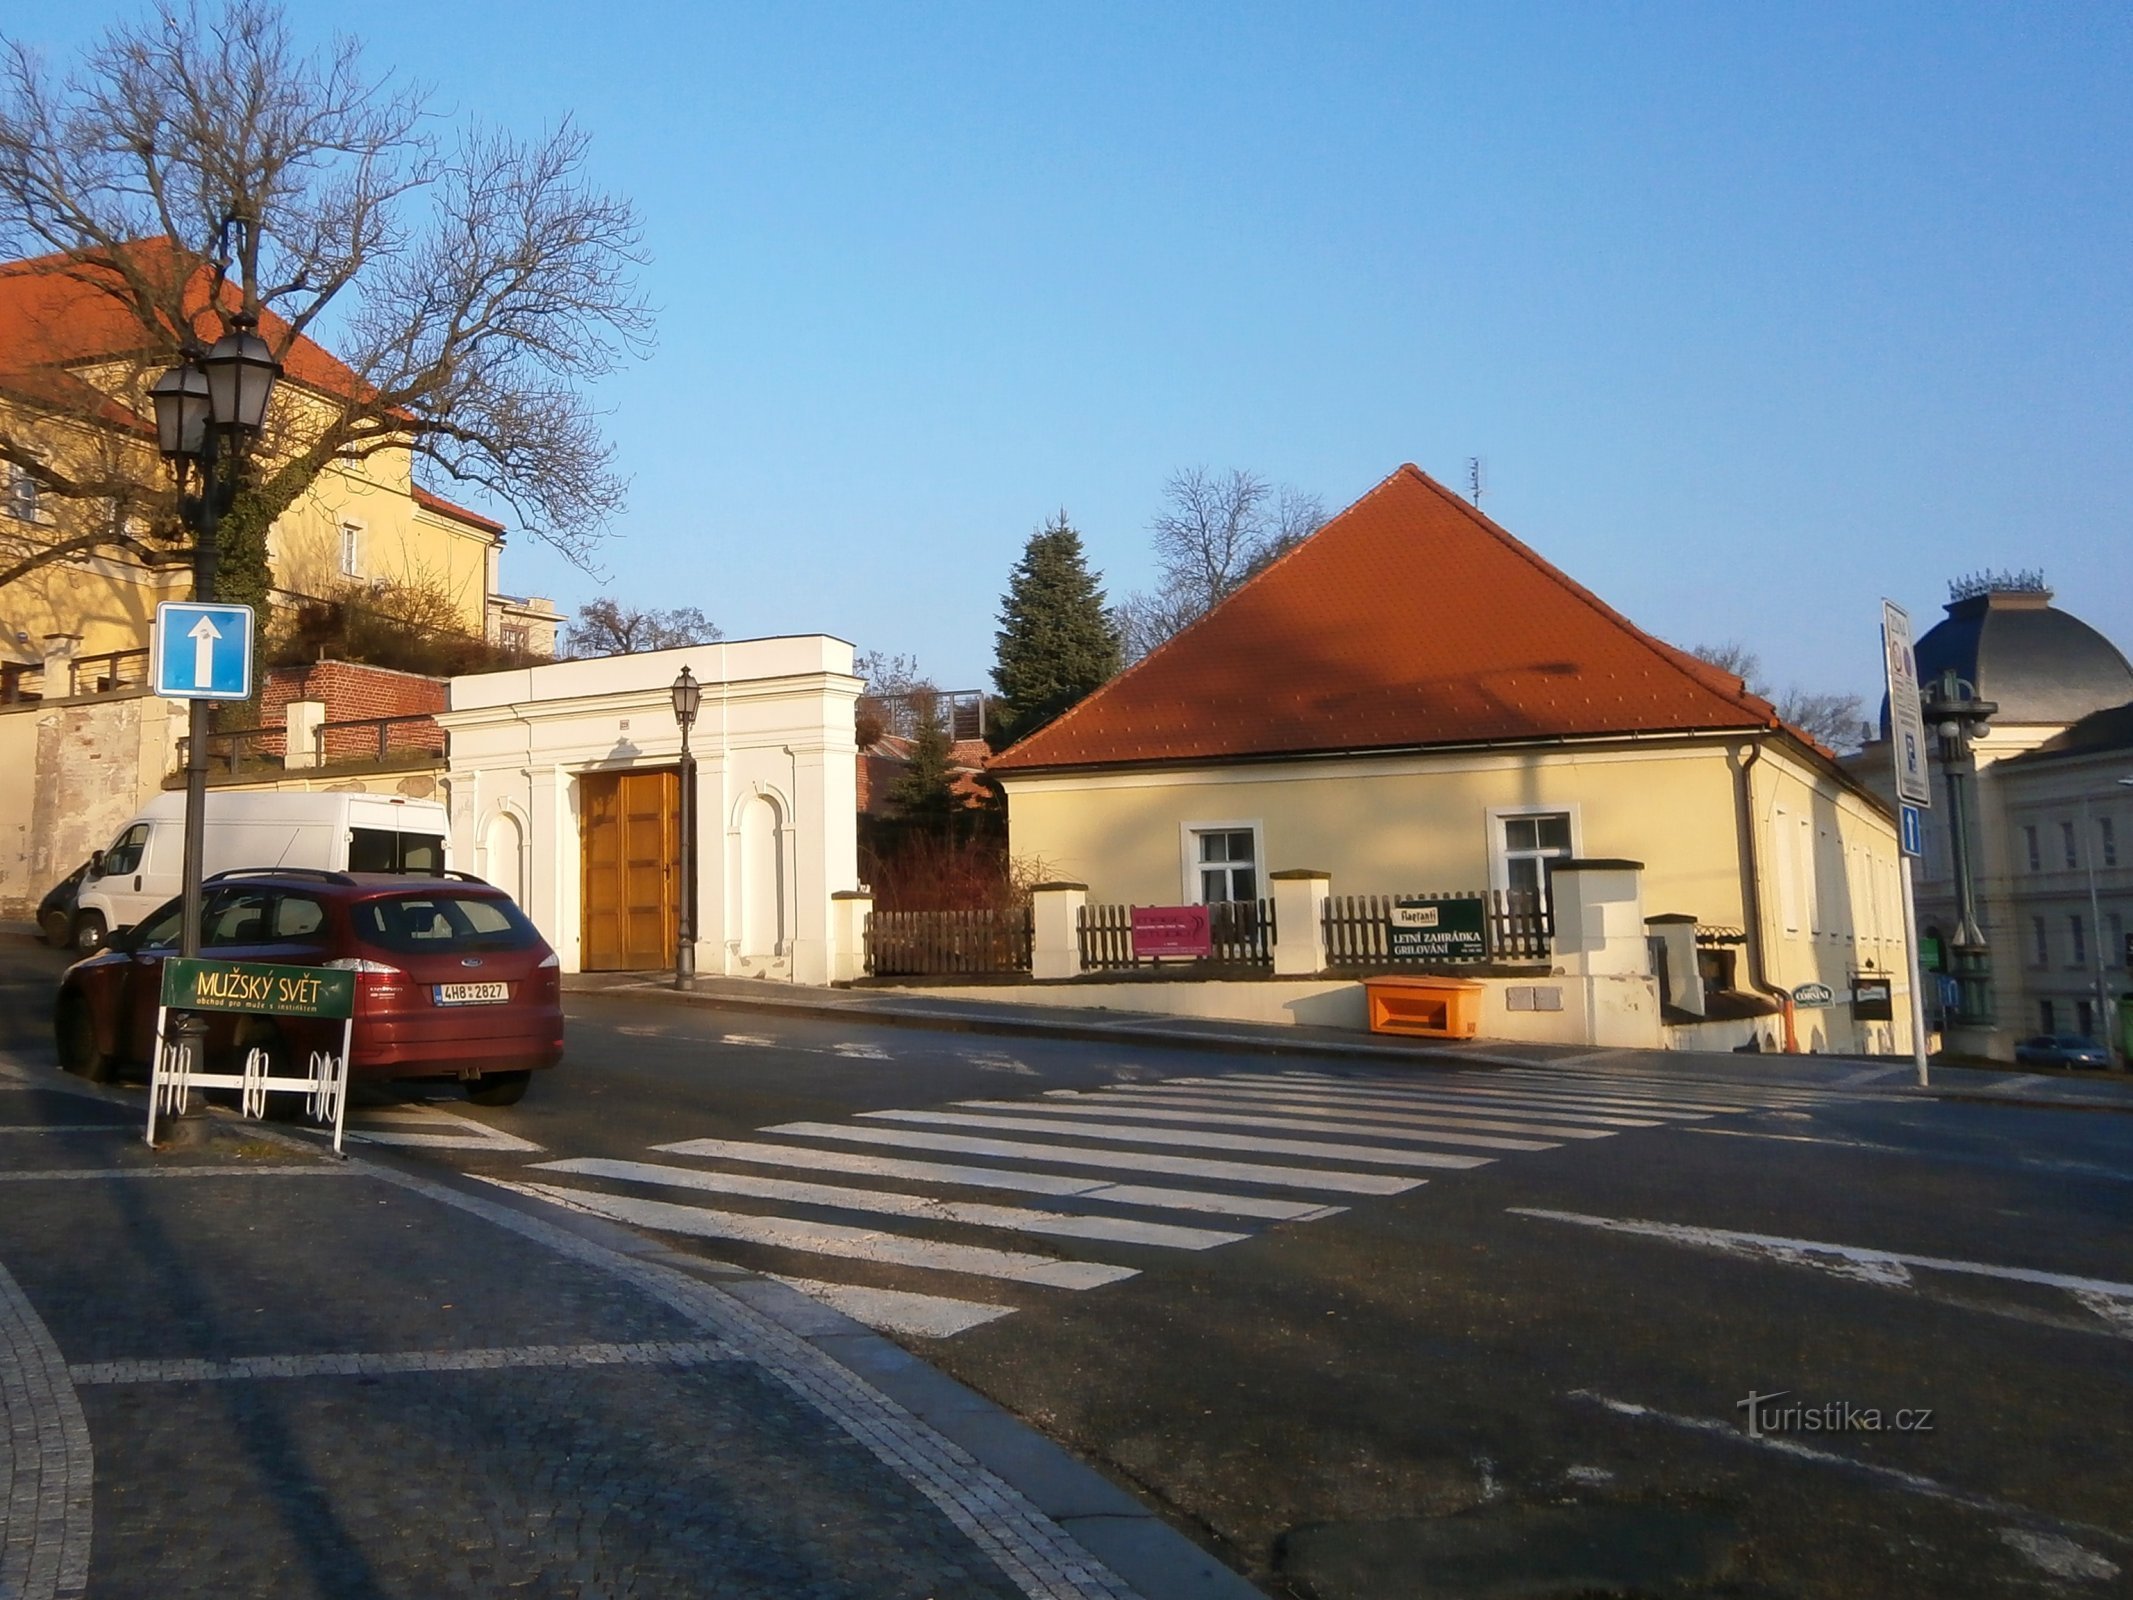 エンジニアリング部門 (Hradec Králové、16.1.2015 年 XNUMX 月 XNUMX 日)